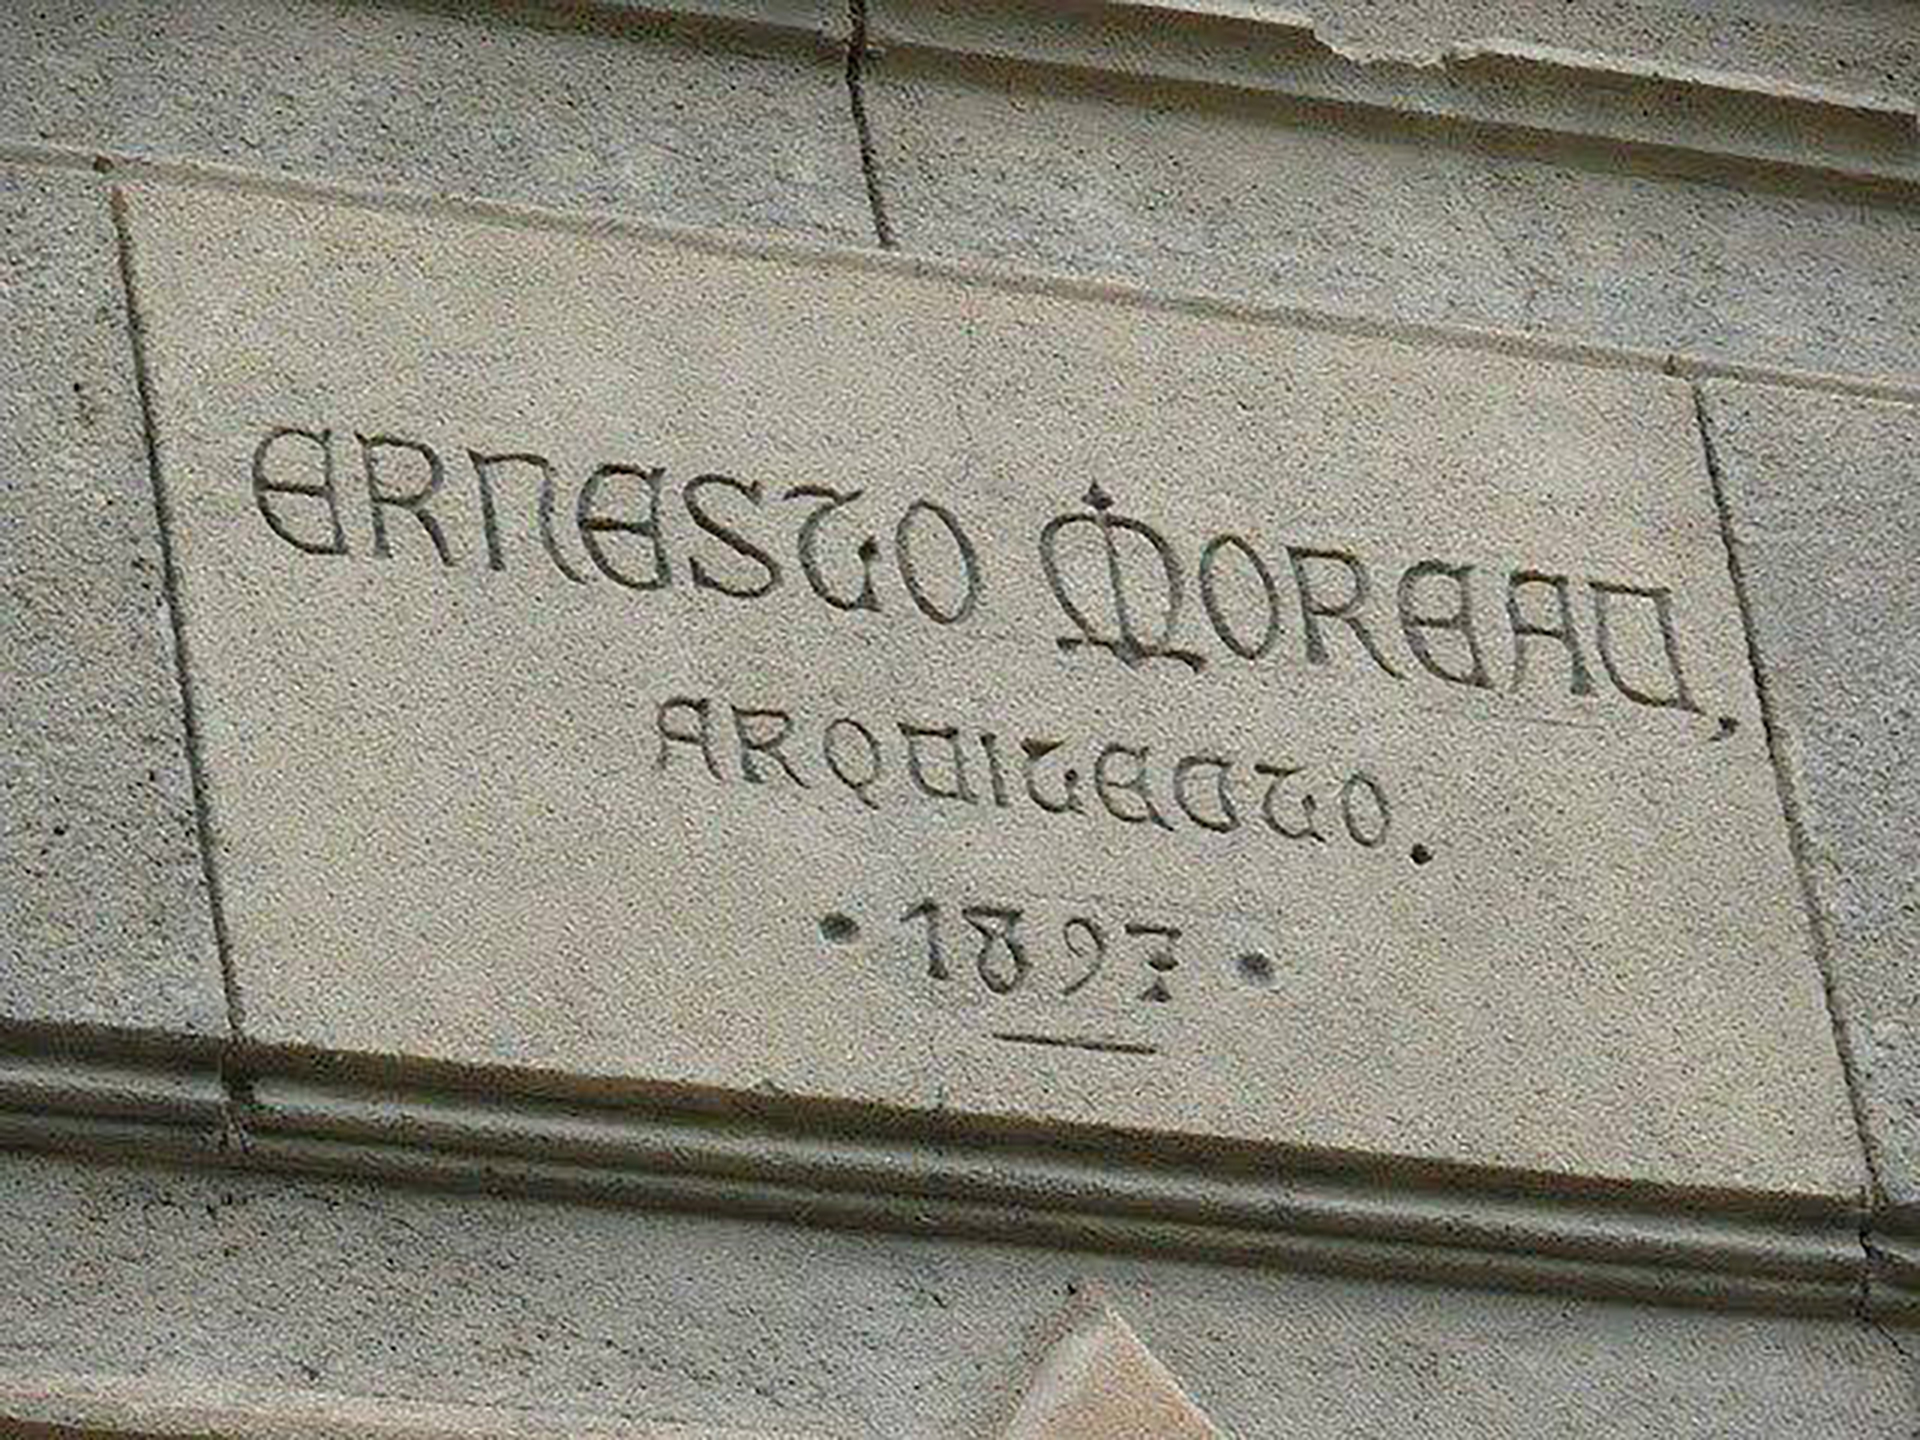 La fecha de construcción y la firma del arquitecto Ernesto Moreau, un experto en el estilo gótico